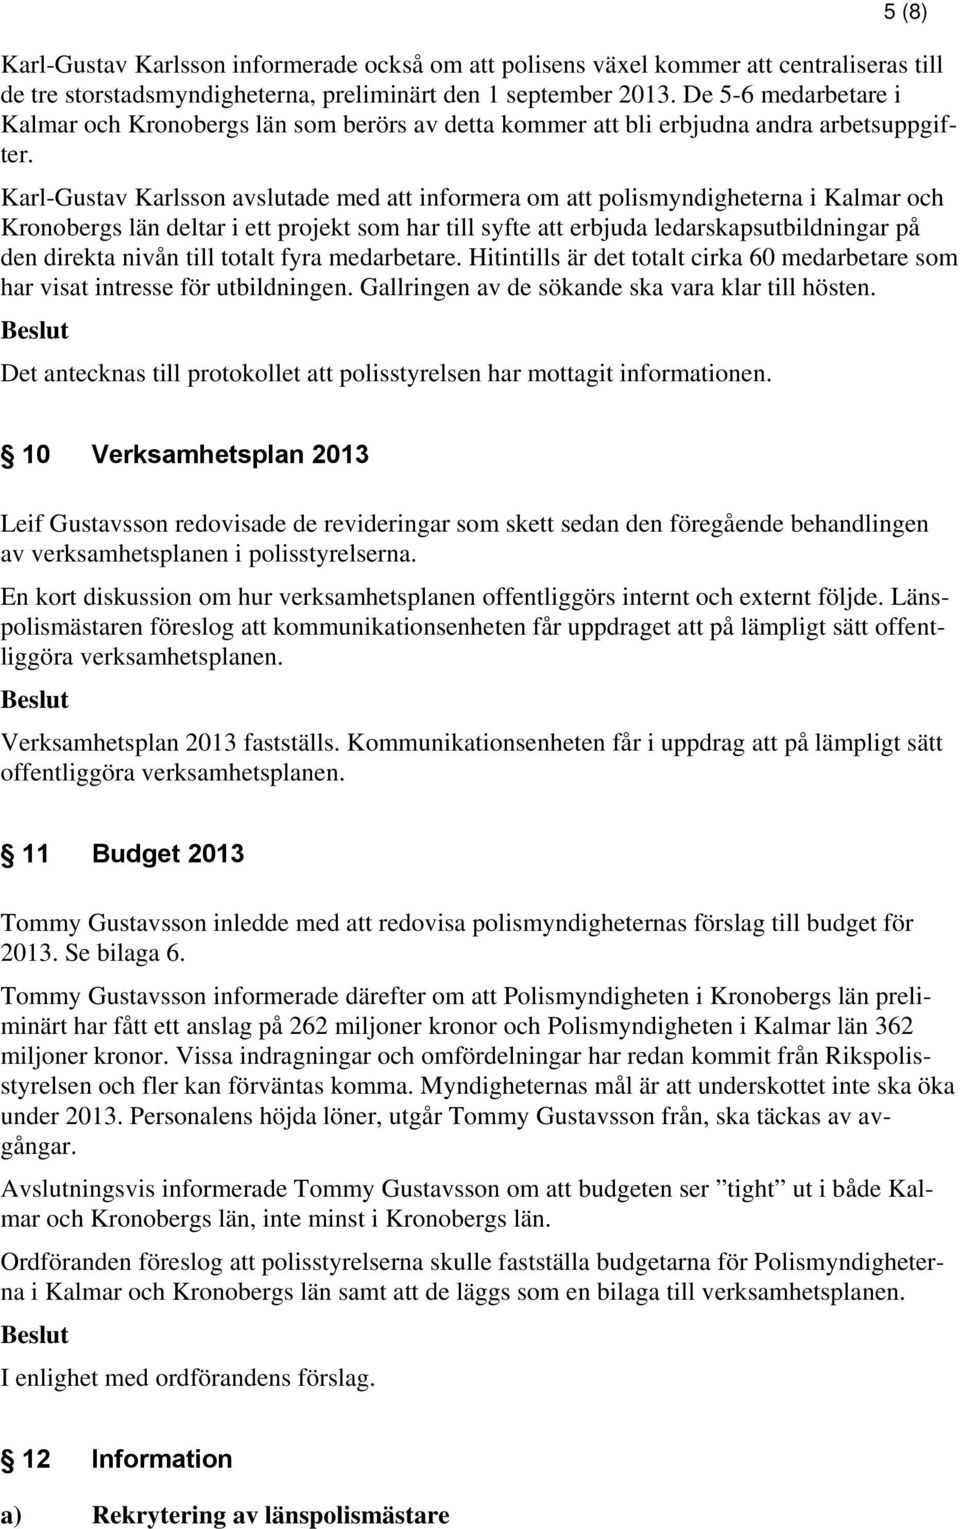 Karl-Gustav Karlsson avslutade med att informera om att polismyndigheterna i Kalmar och Kronobergs län deltar i ett projekt som har till syfte att erbjuda ledarskapsutbildningar på den direkta nivån